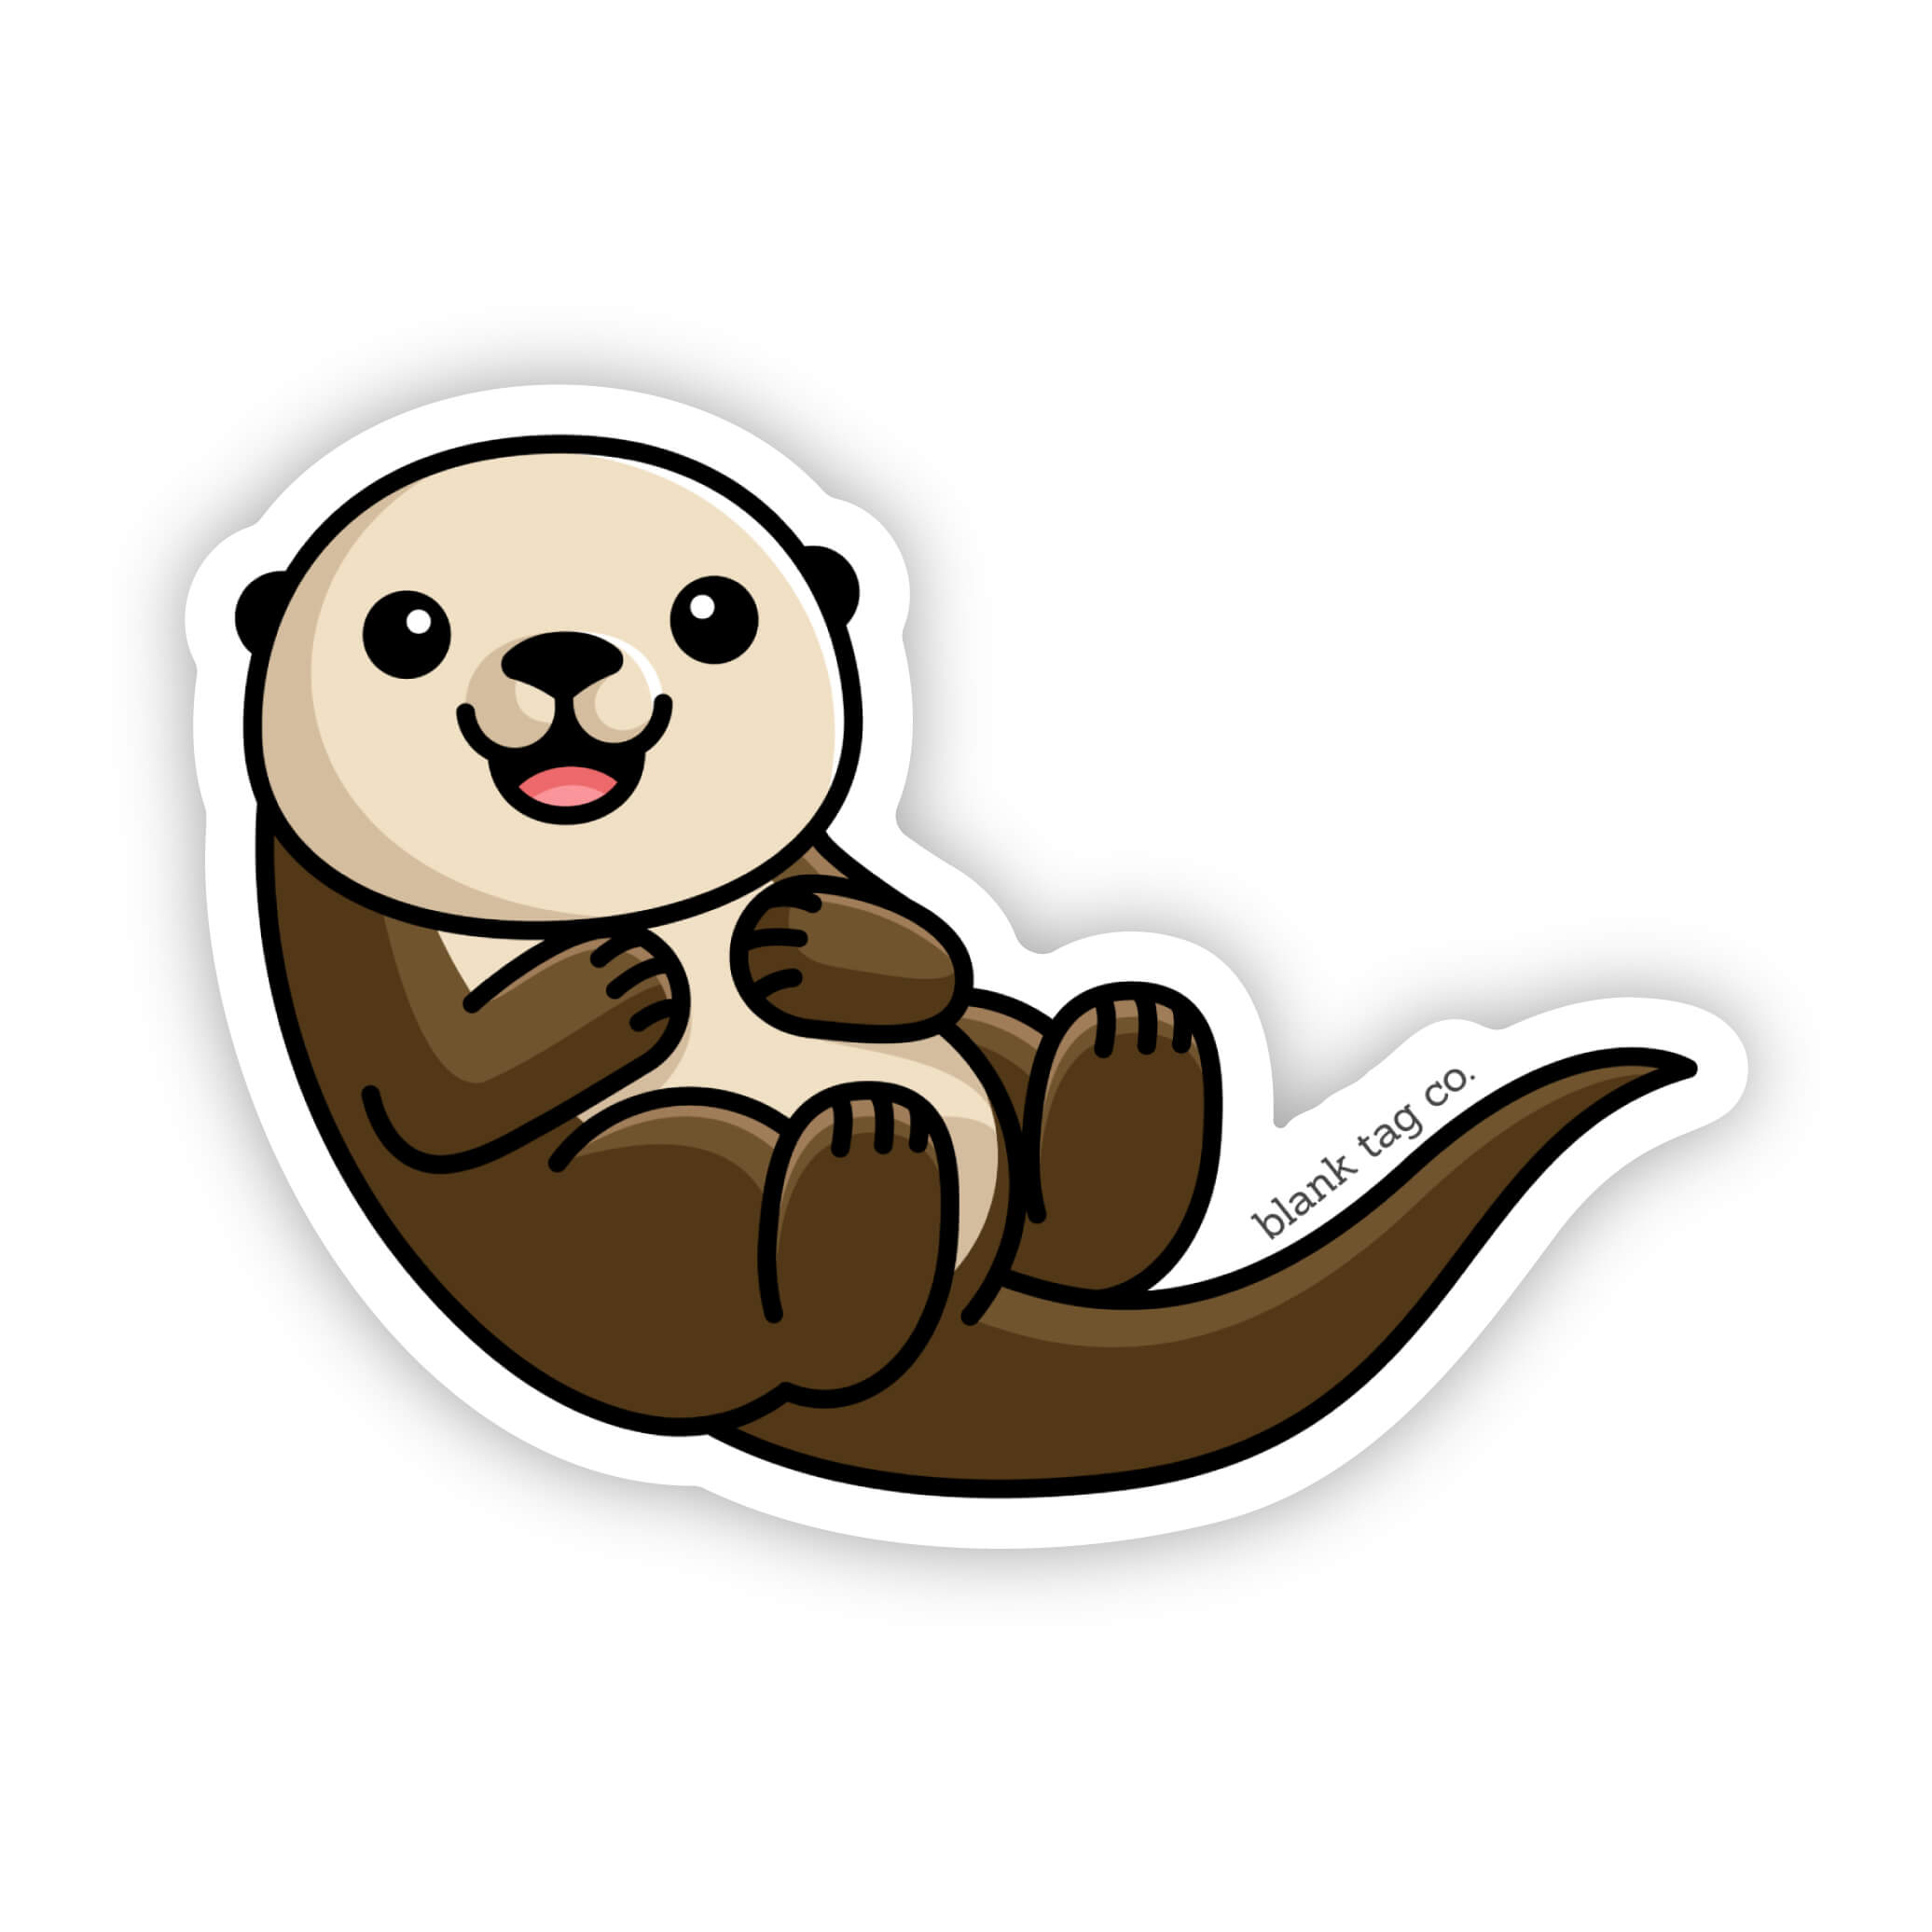 The Sea Otter Sticker